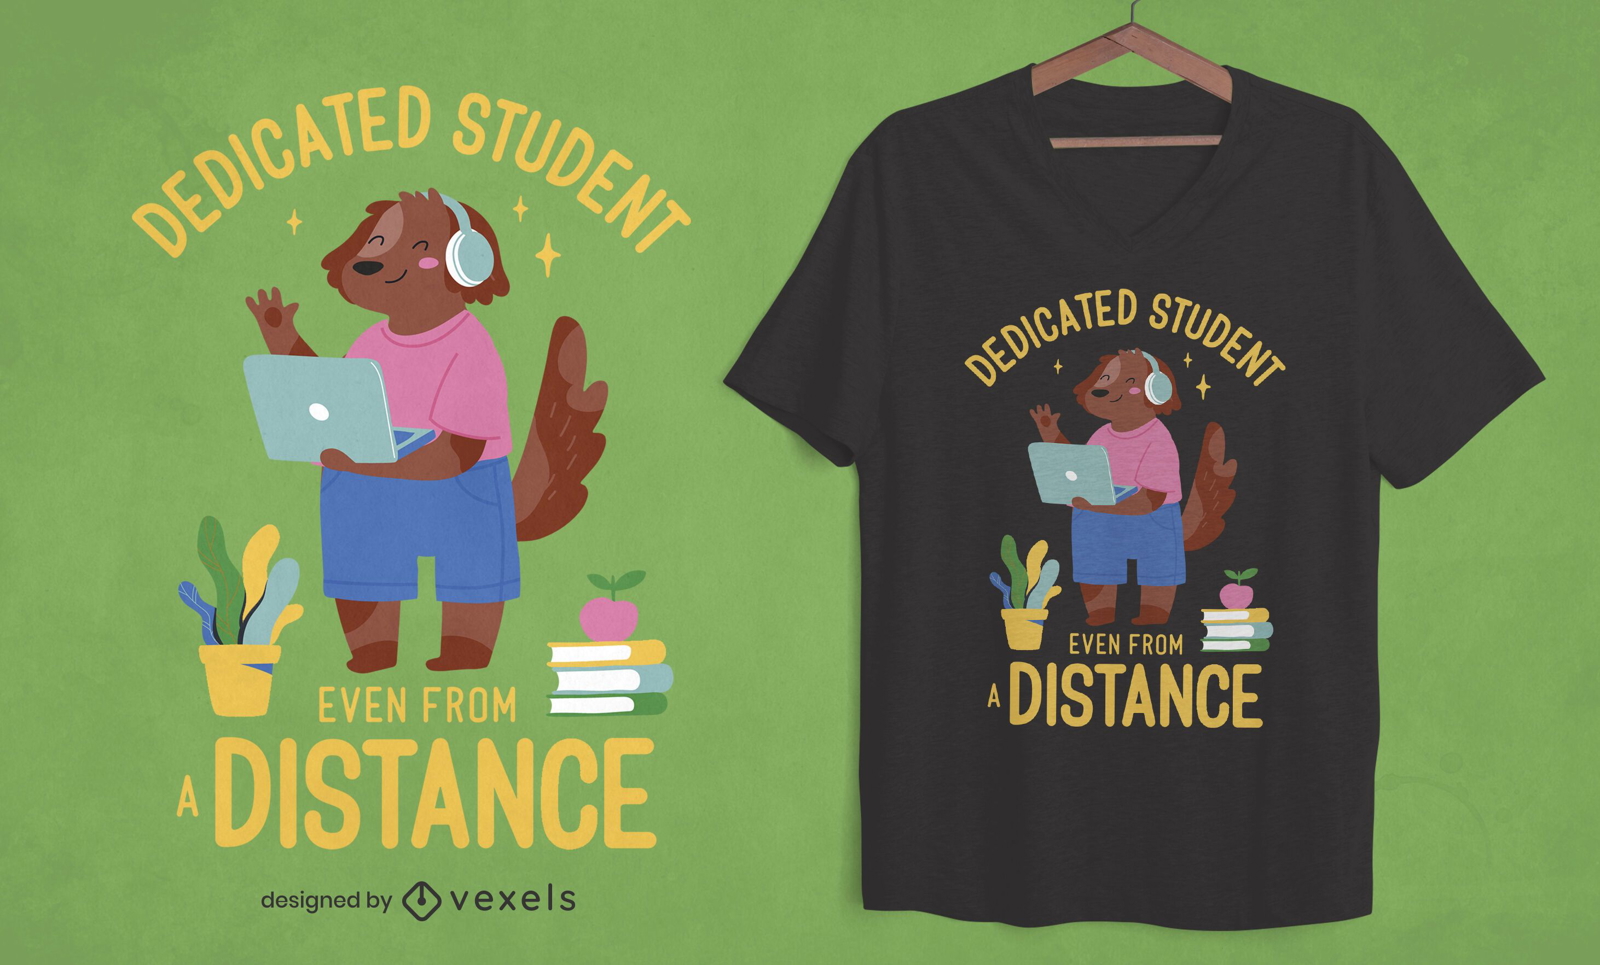 Dise?o de camiseta de estudiante desde la distancia.